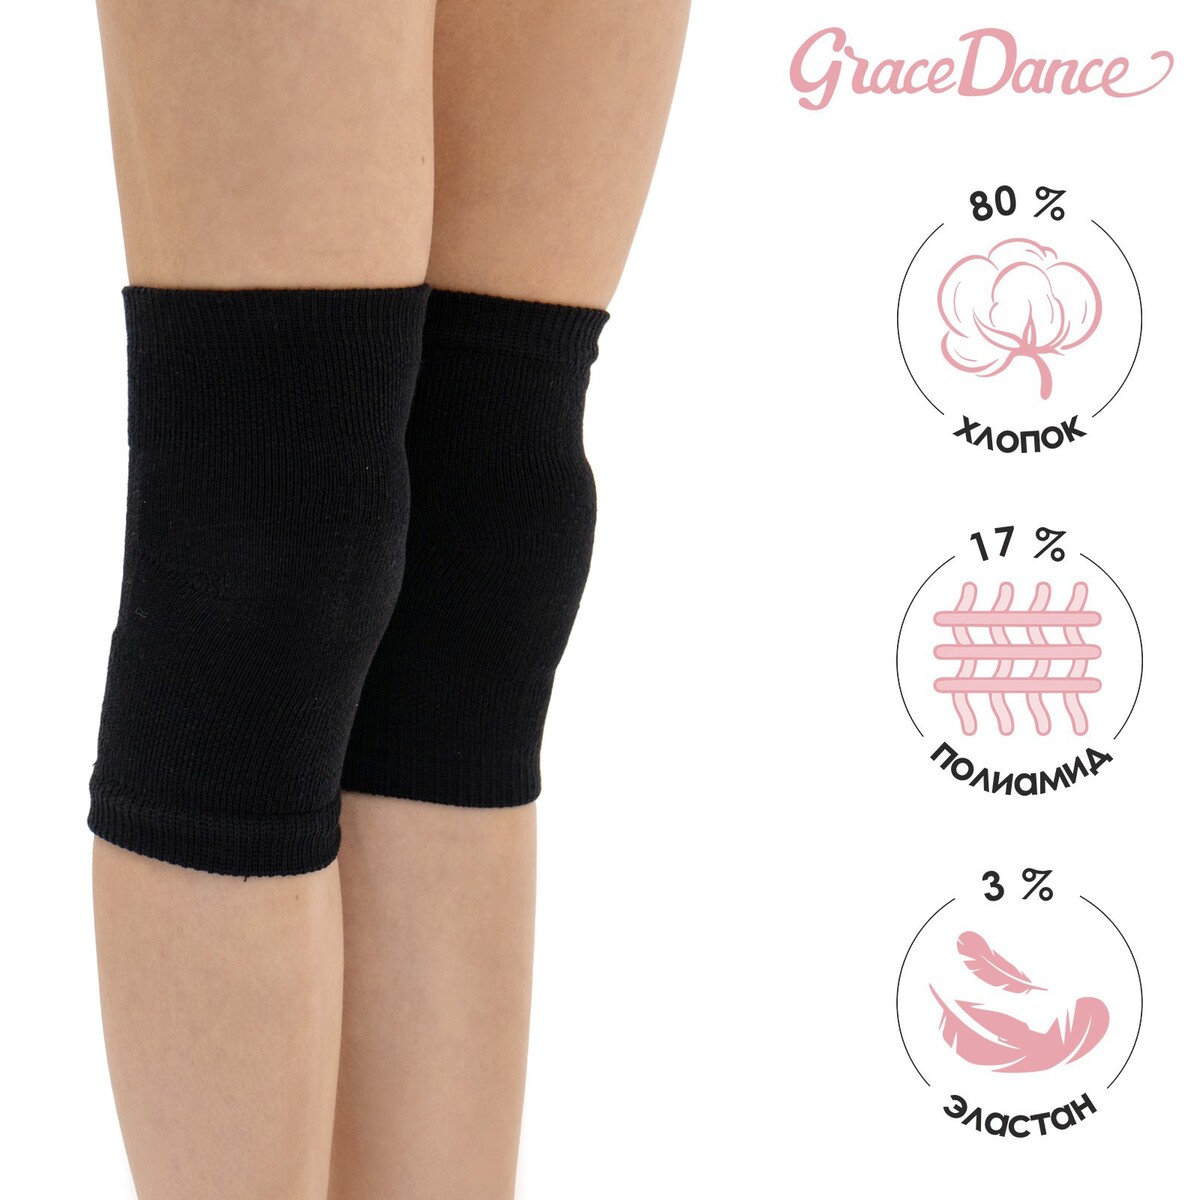 Наколенники для гимнастики и танцев grace dance №2, р. хs, цвет черный Grace Dance